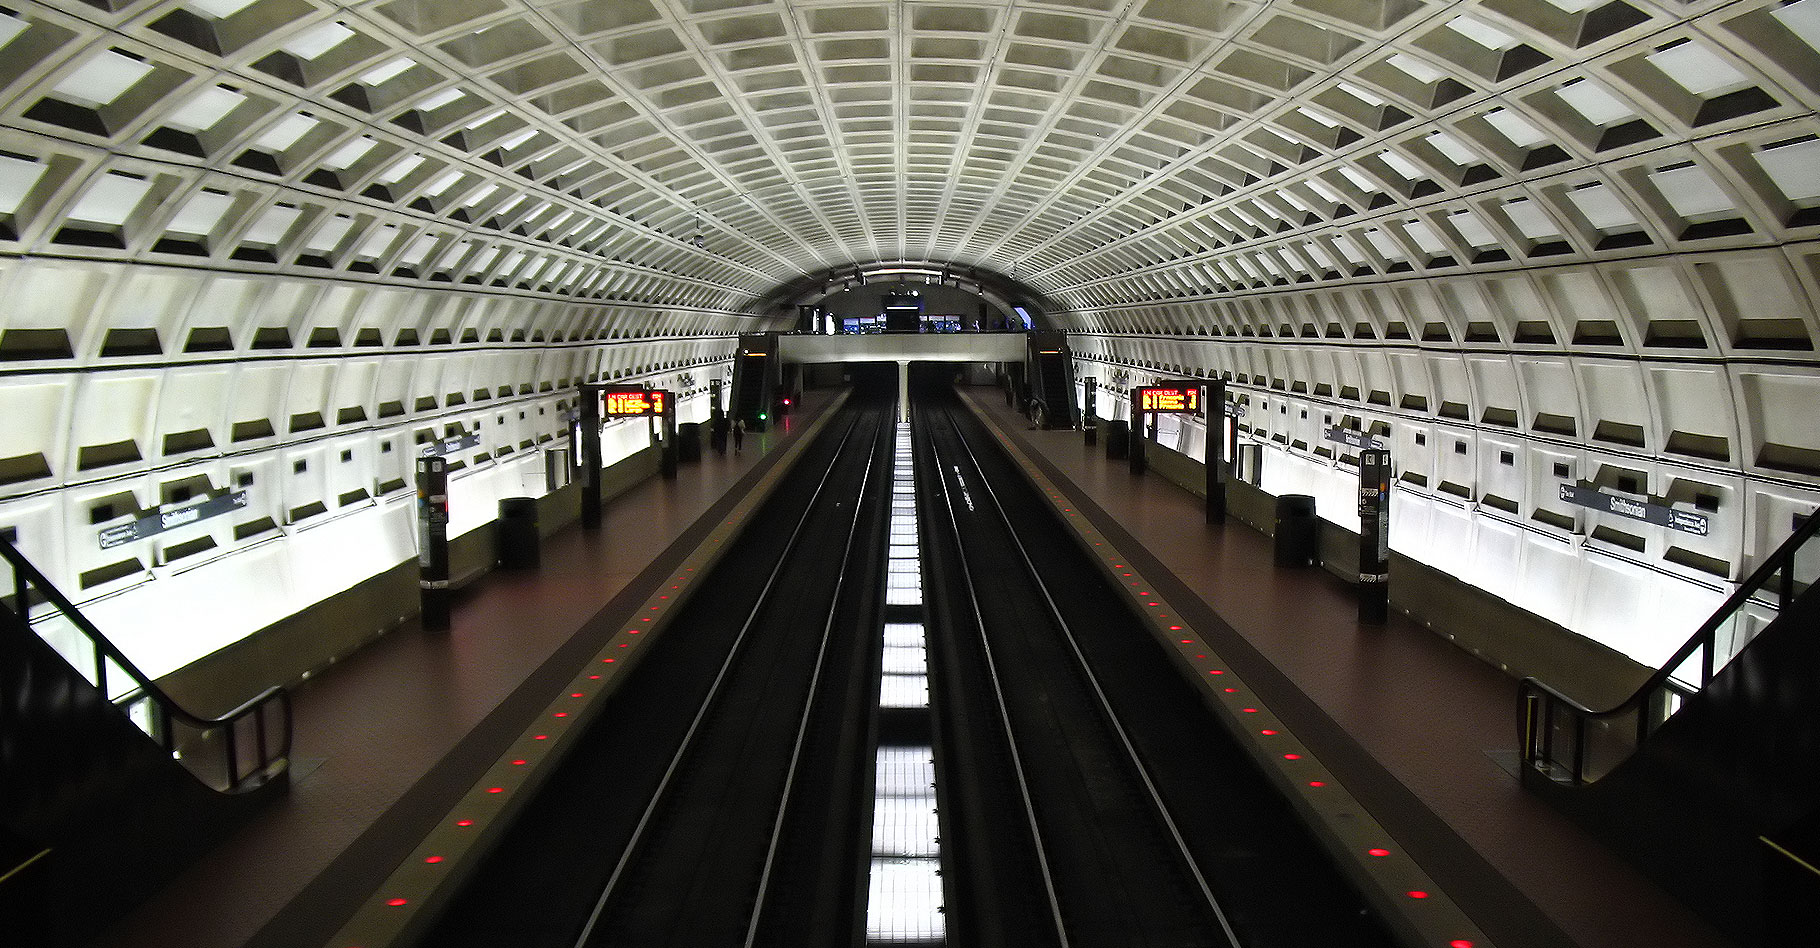 Le magnifique plafond elliptique d'un quai de métro. © Phil King, Flickr, CC by-nc 2.0